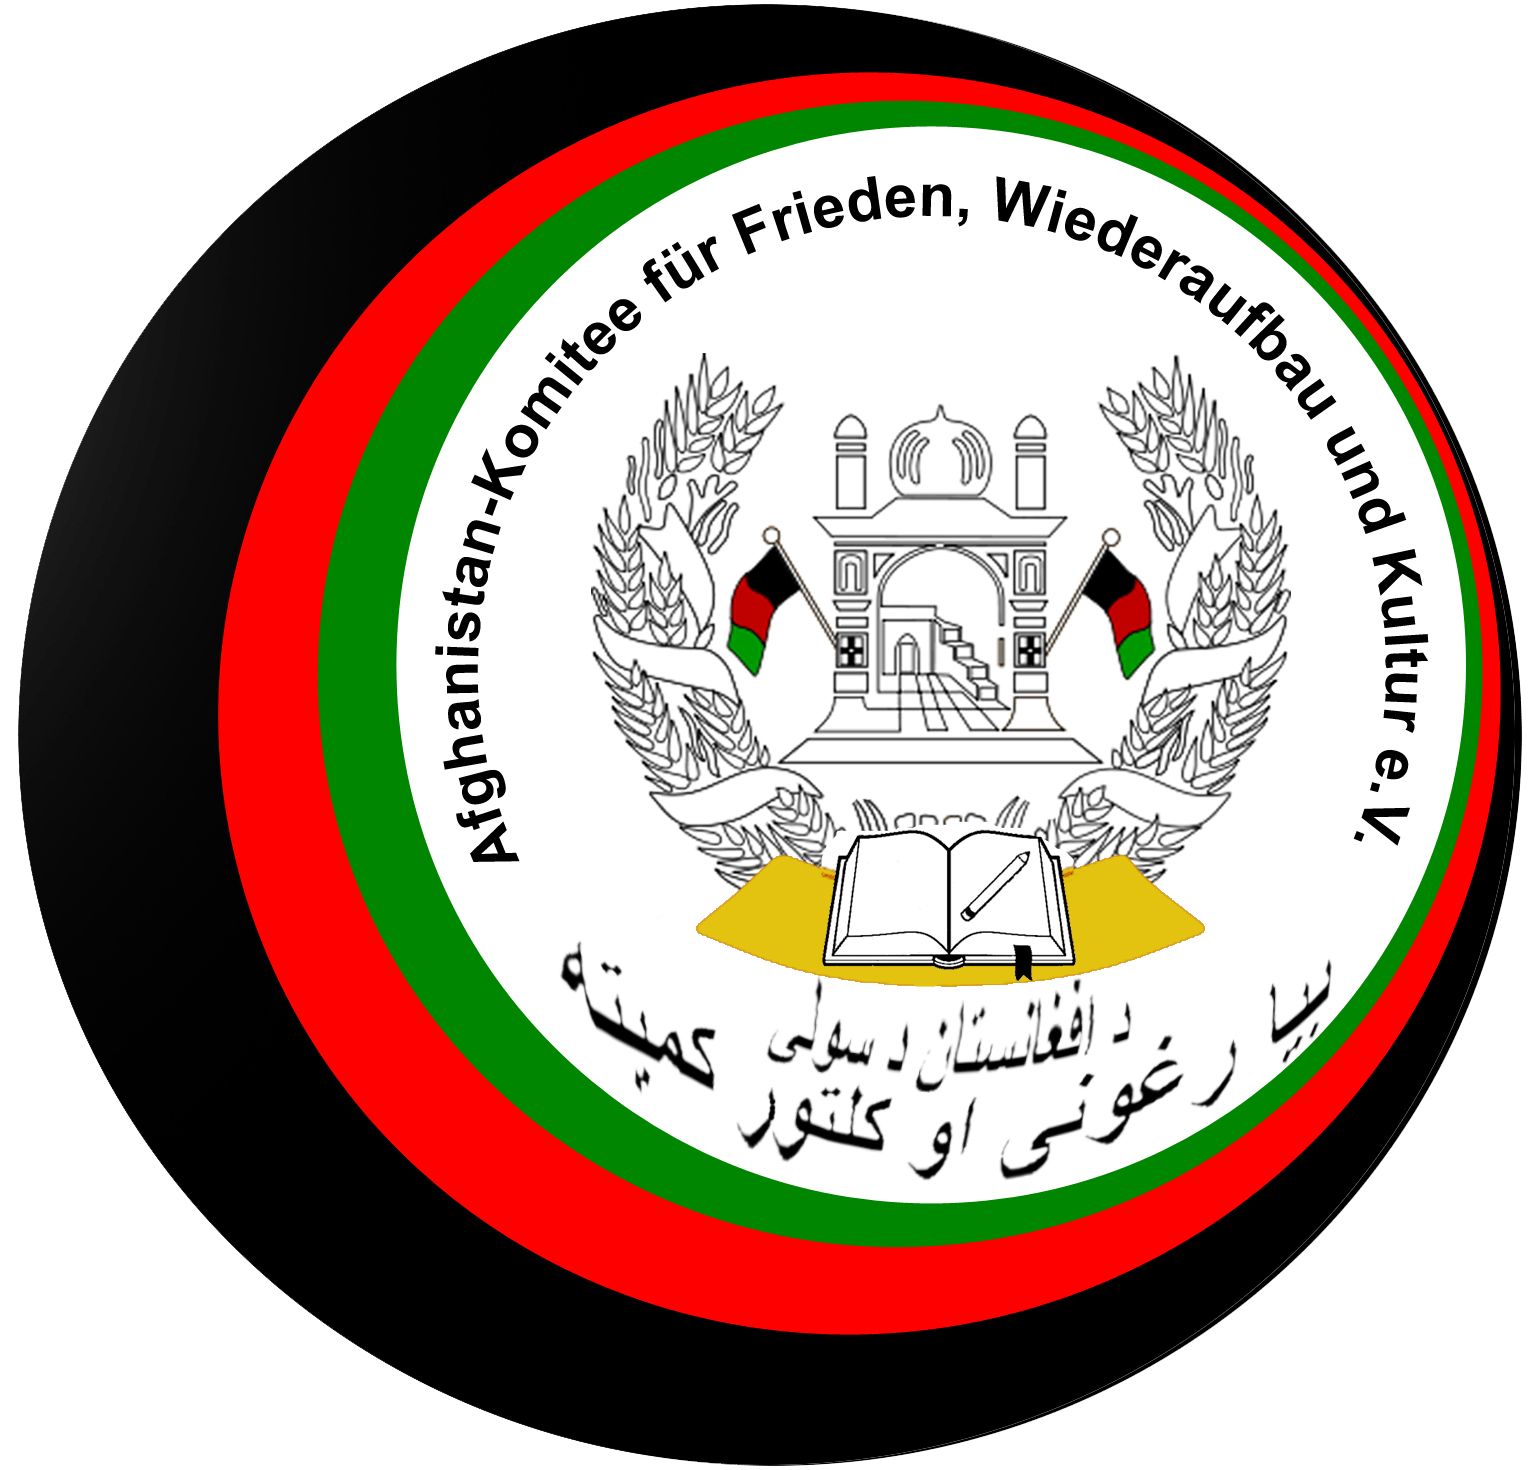 Afghanistan-Komitee für Frieden, Wiederaufbau und Kultur e.V.